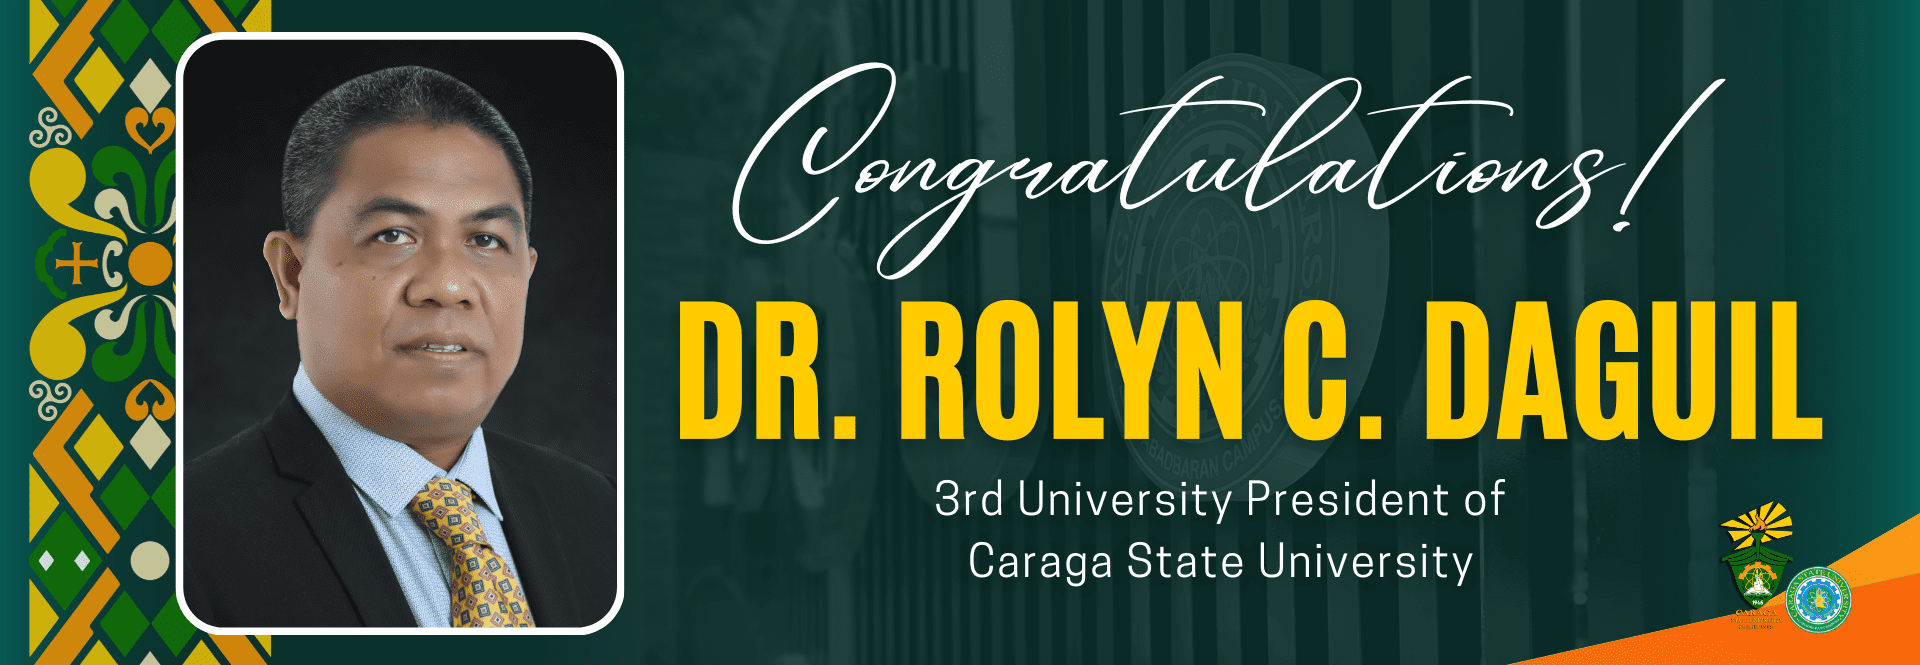 Congratulations Dr. Daguil!